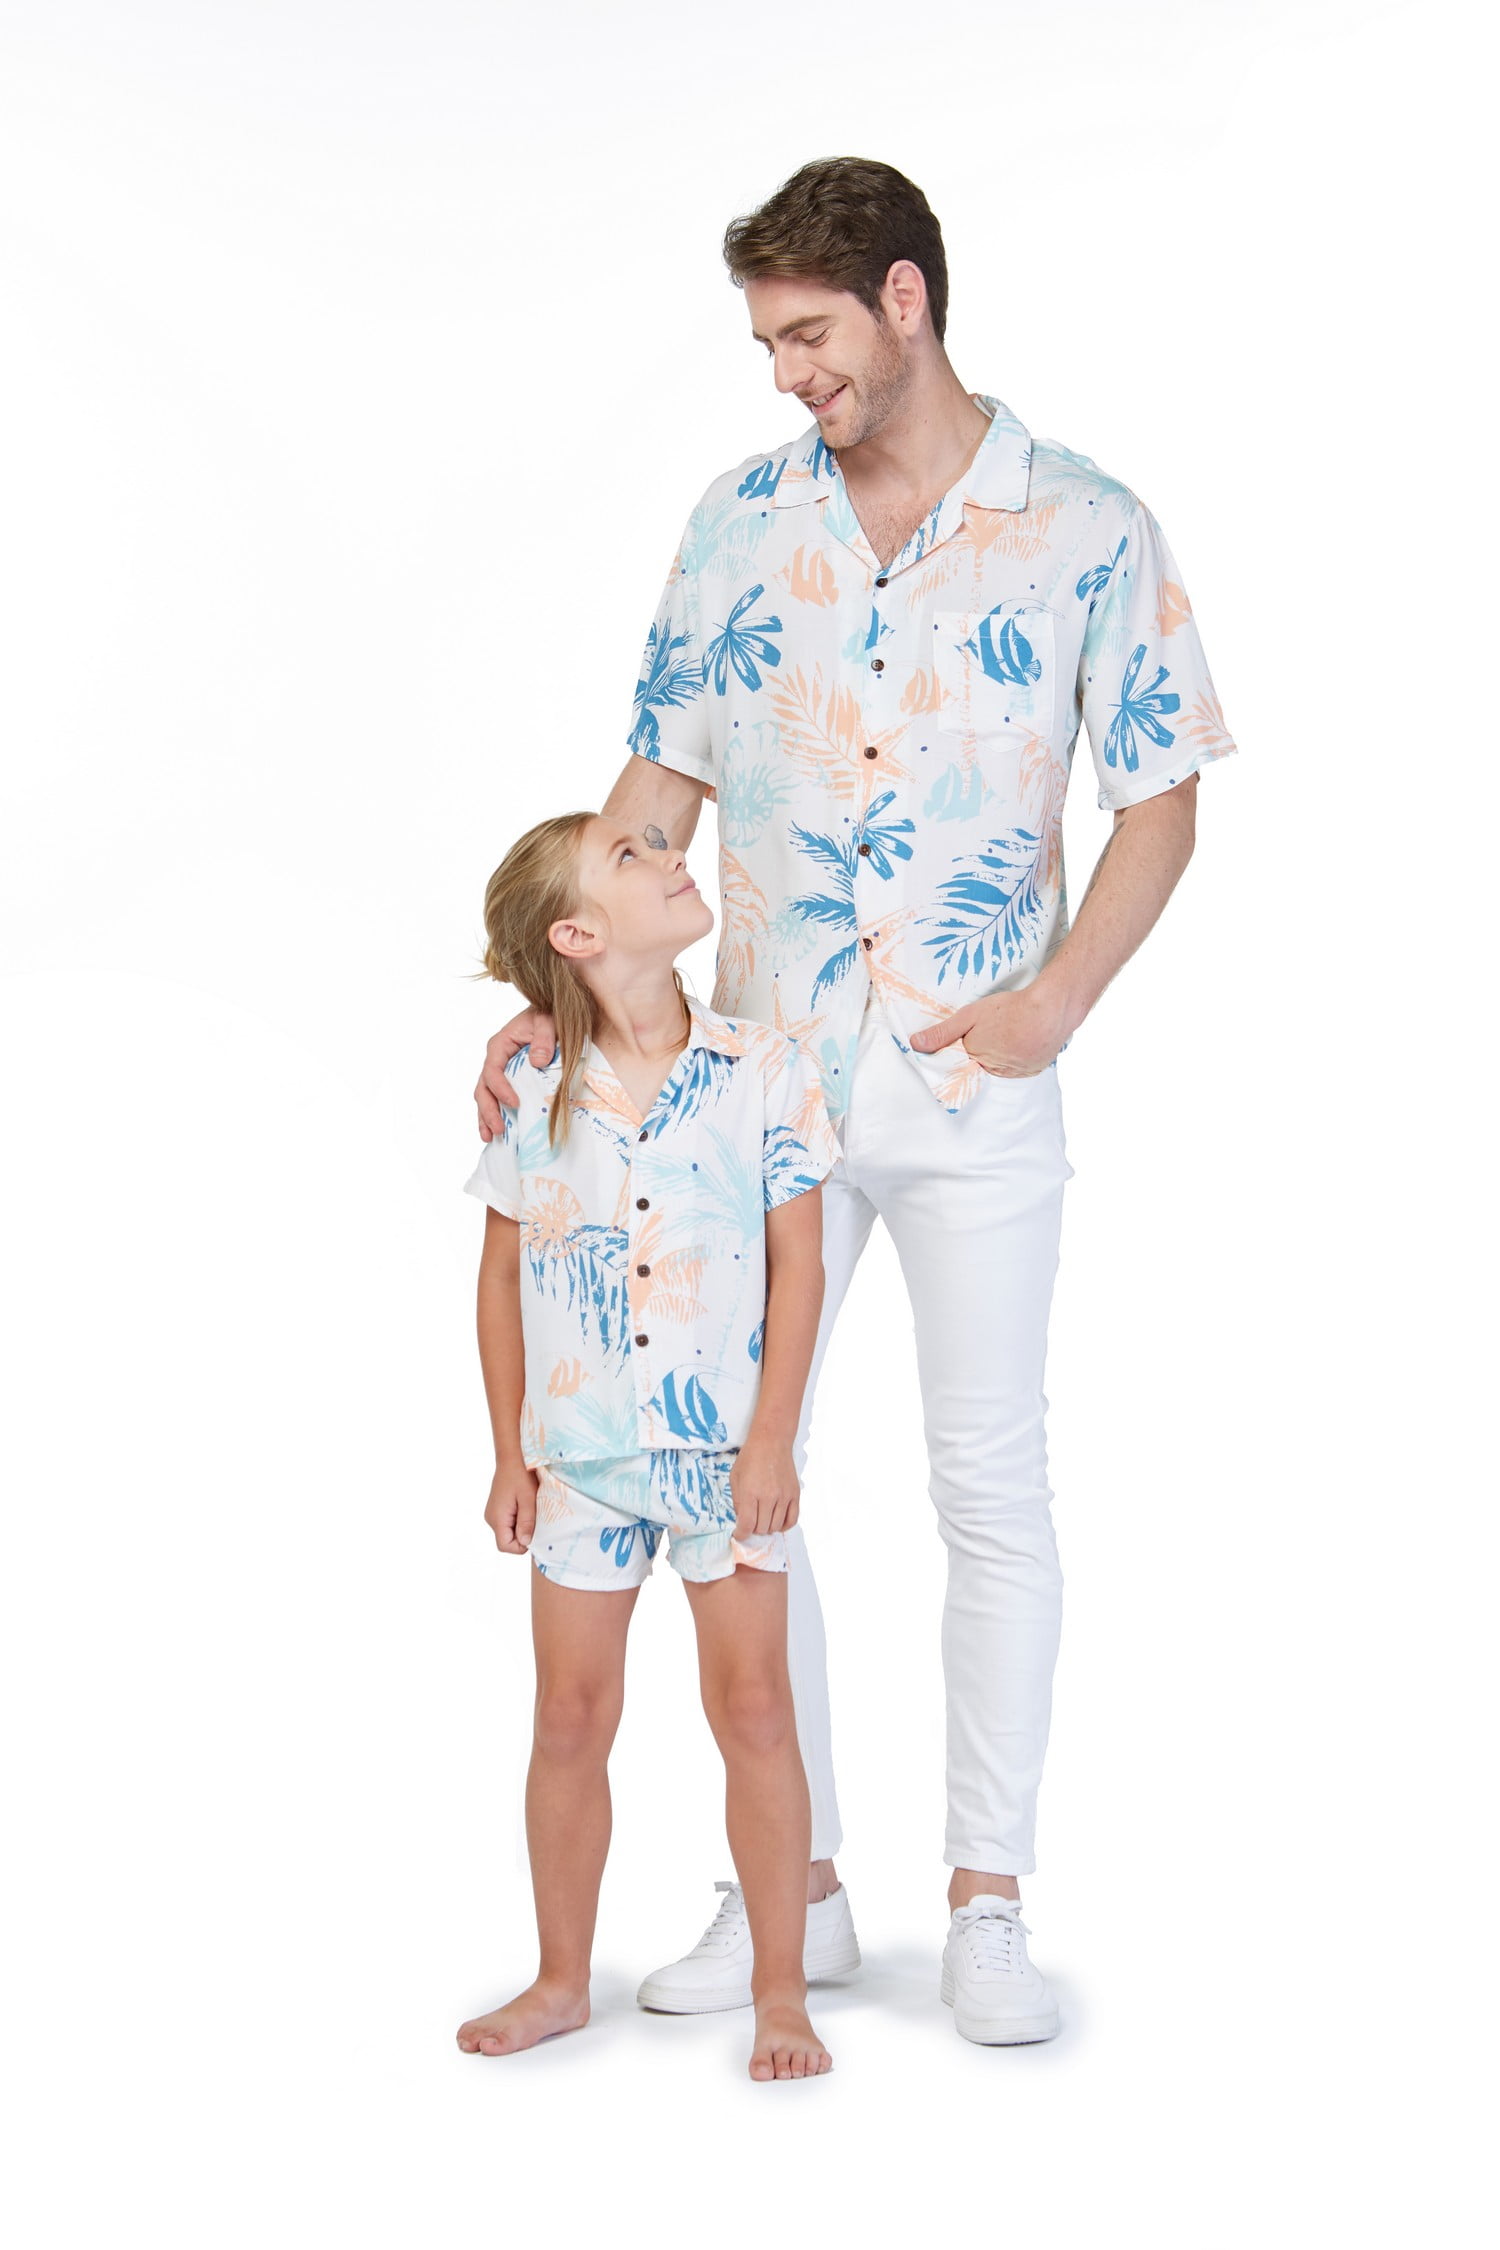 Matching Father Son Hawaiian Luau Outfit Men Shirt Boy Shirt Shorts Yellow Map